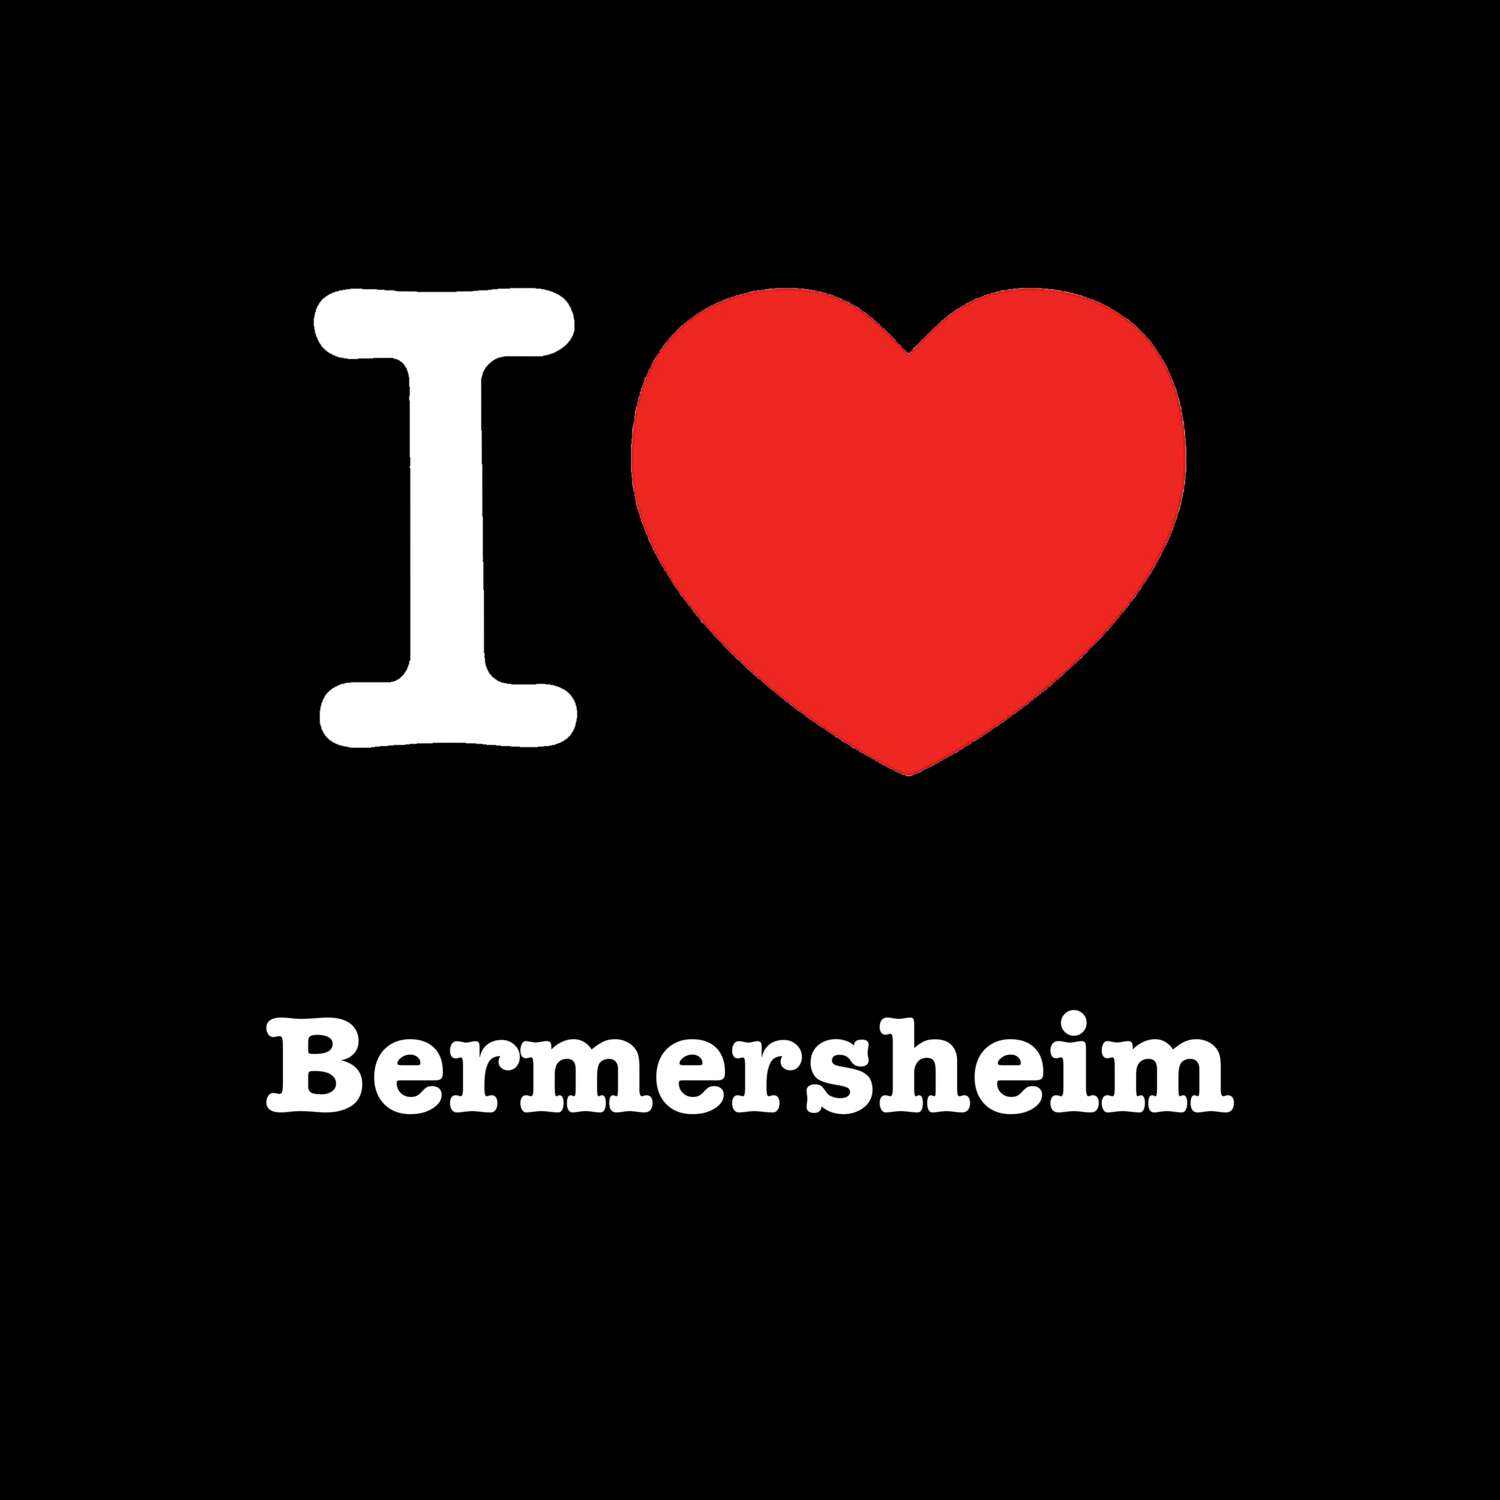 Bermersheim T-Shirt »I love«